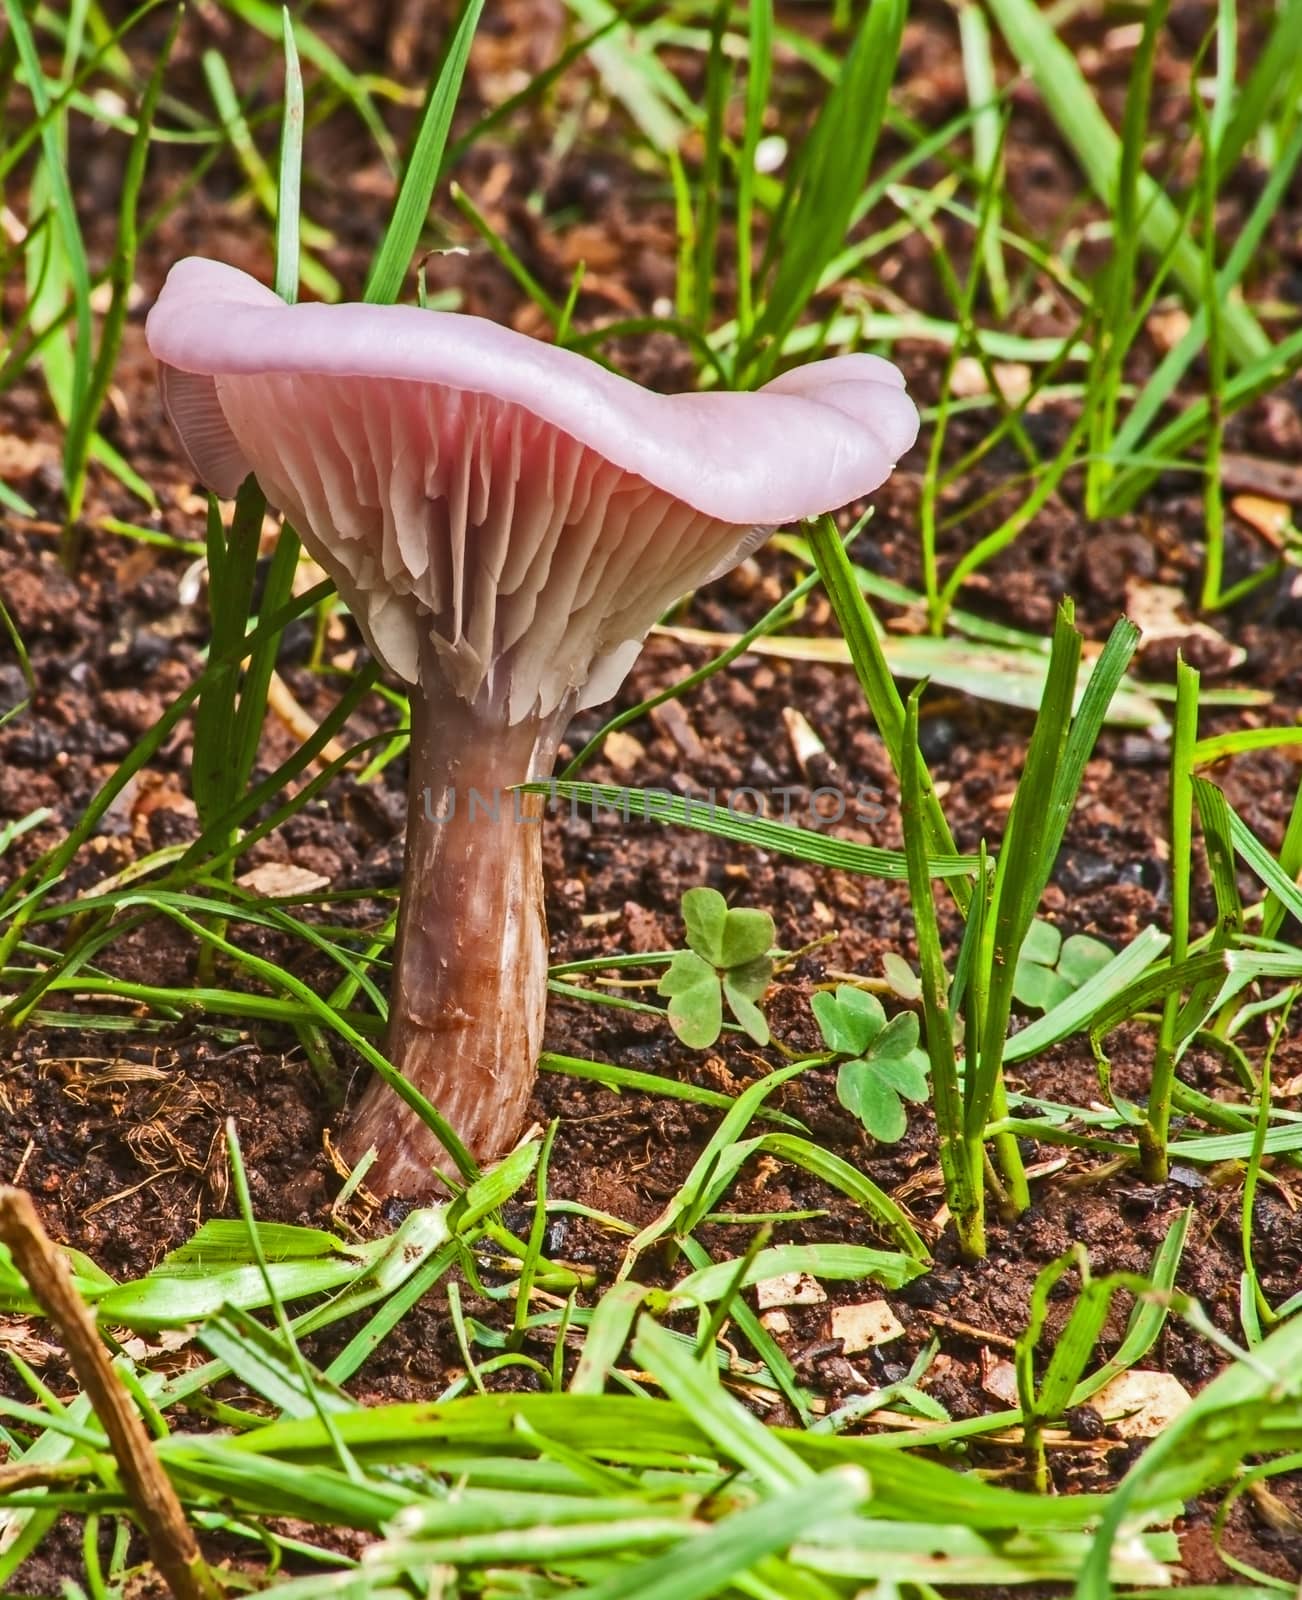 Wild mushroom 8586 1 by kobus_peche